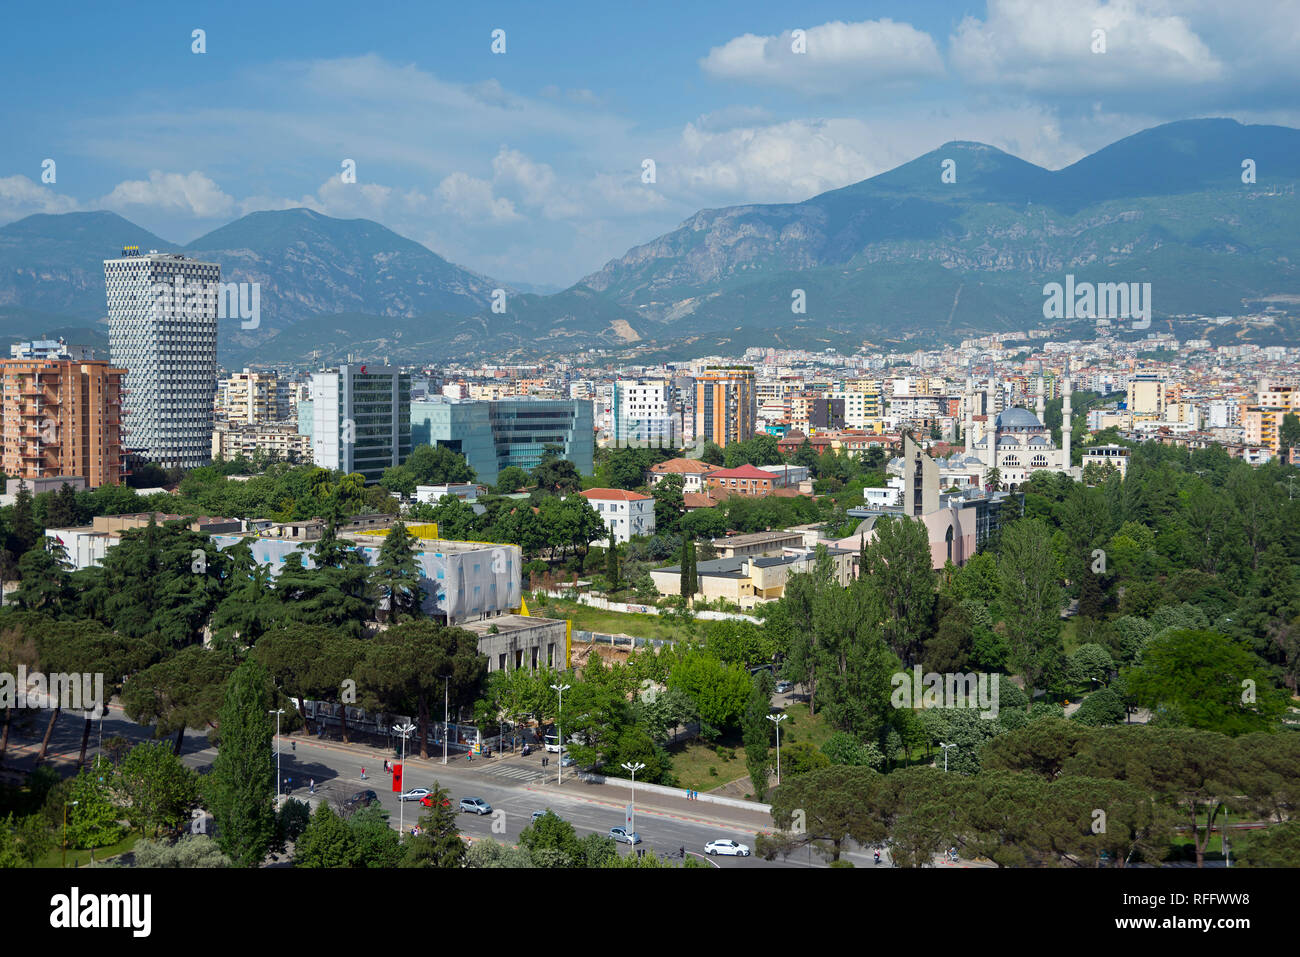 Blick auf die Stadt, Stadtzentrum mit TID Turm und Große Moschee, Blick vom Sky Tower, Berge im Rücken, Tirana, Albanien Stockfoto